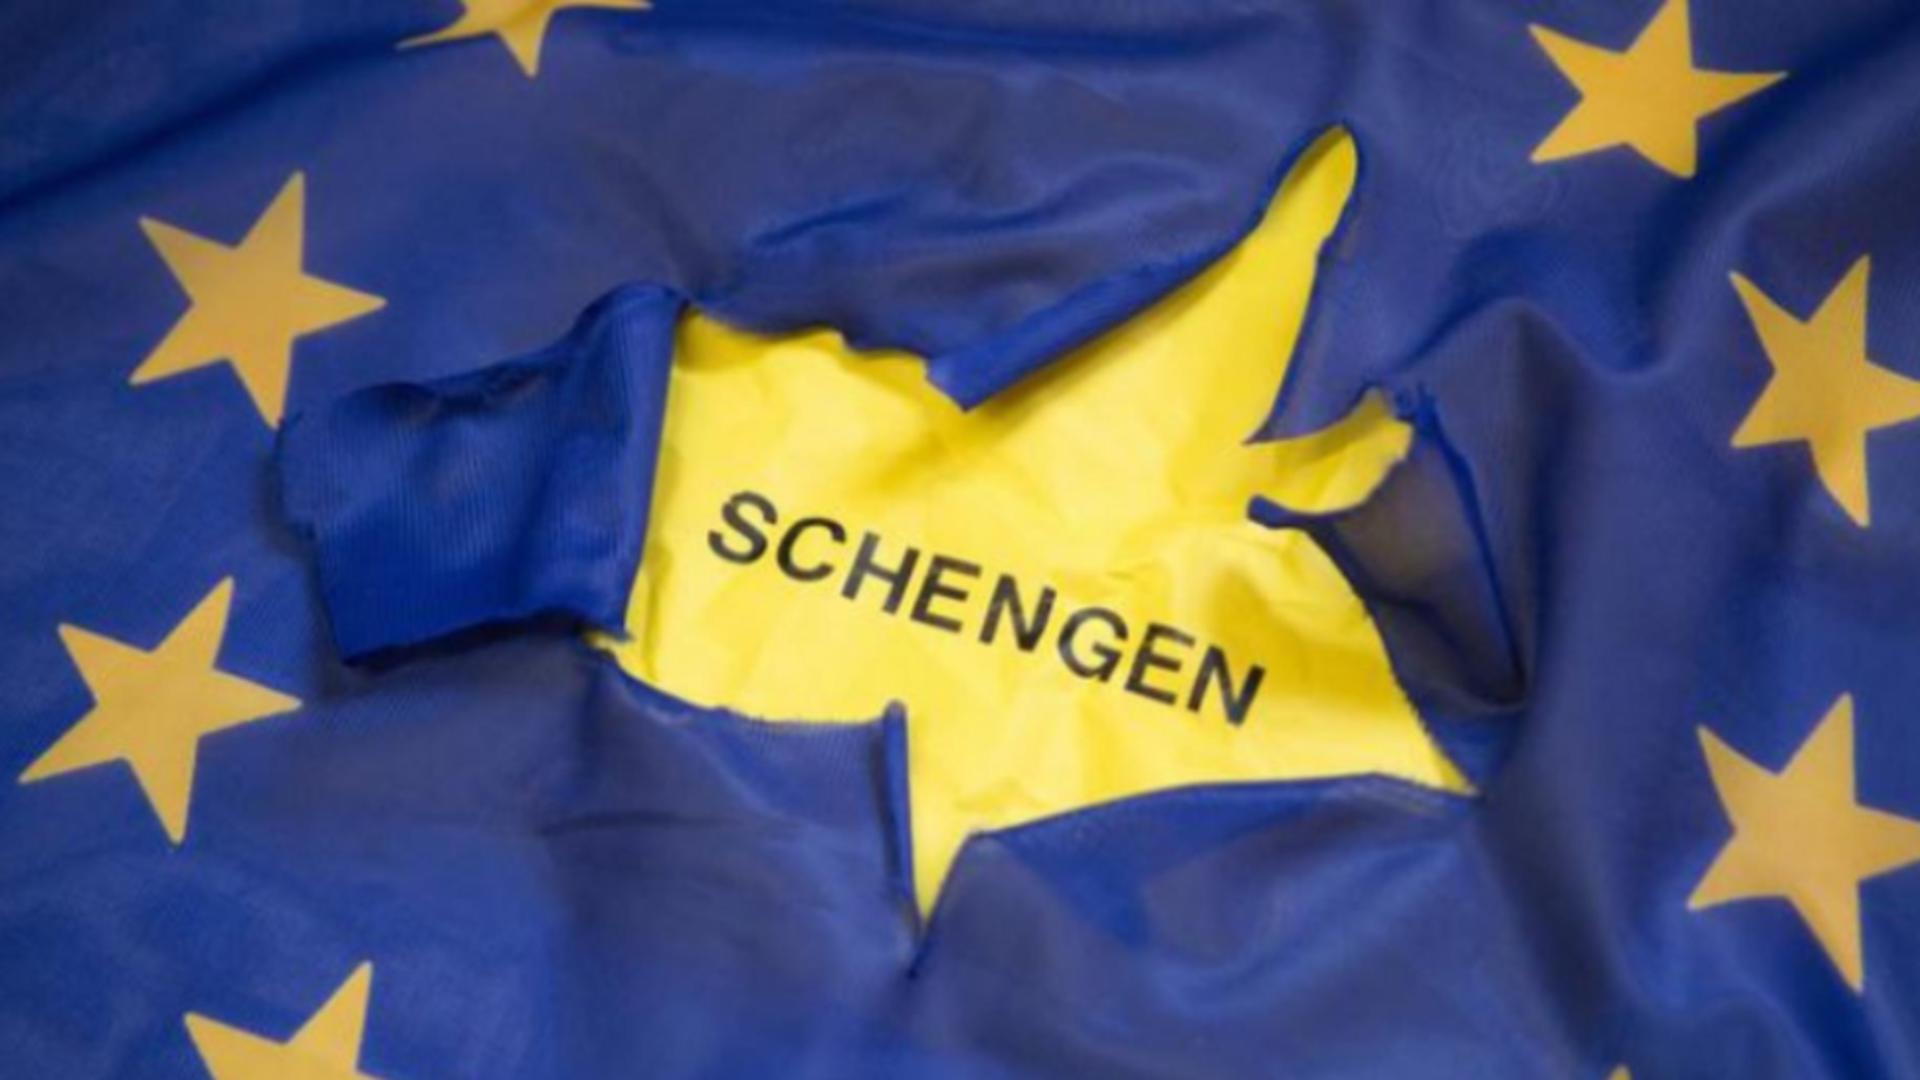 Austria propune României și Bulgariei să accepte solicitanți de azil din Austria, în special sirieni și afgani, pentru a intra în Schengen doar cu traficul aerian. Oferta Vienei pentru București și Sofia